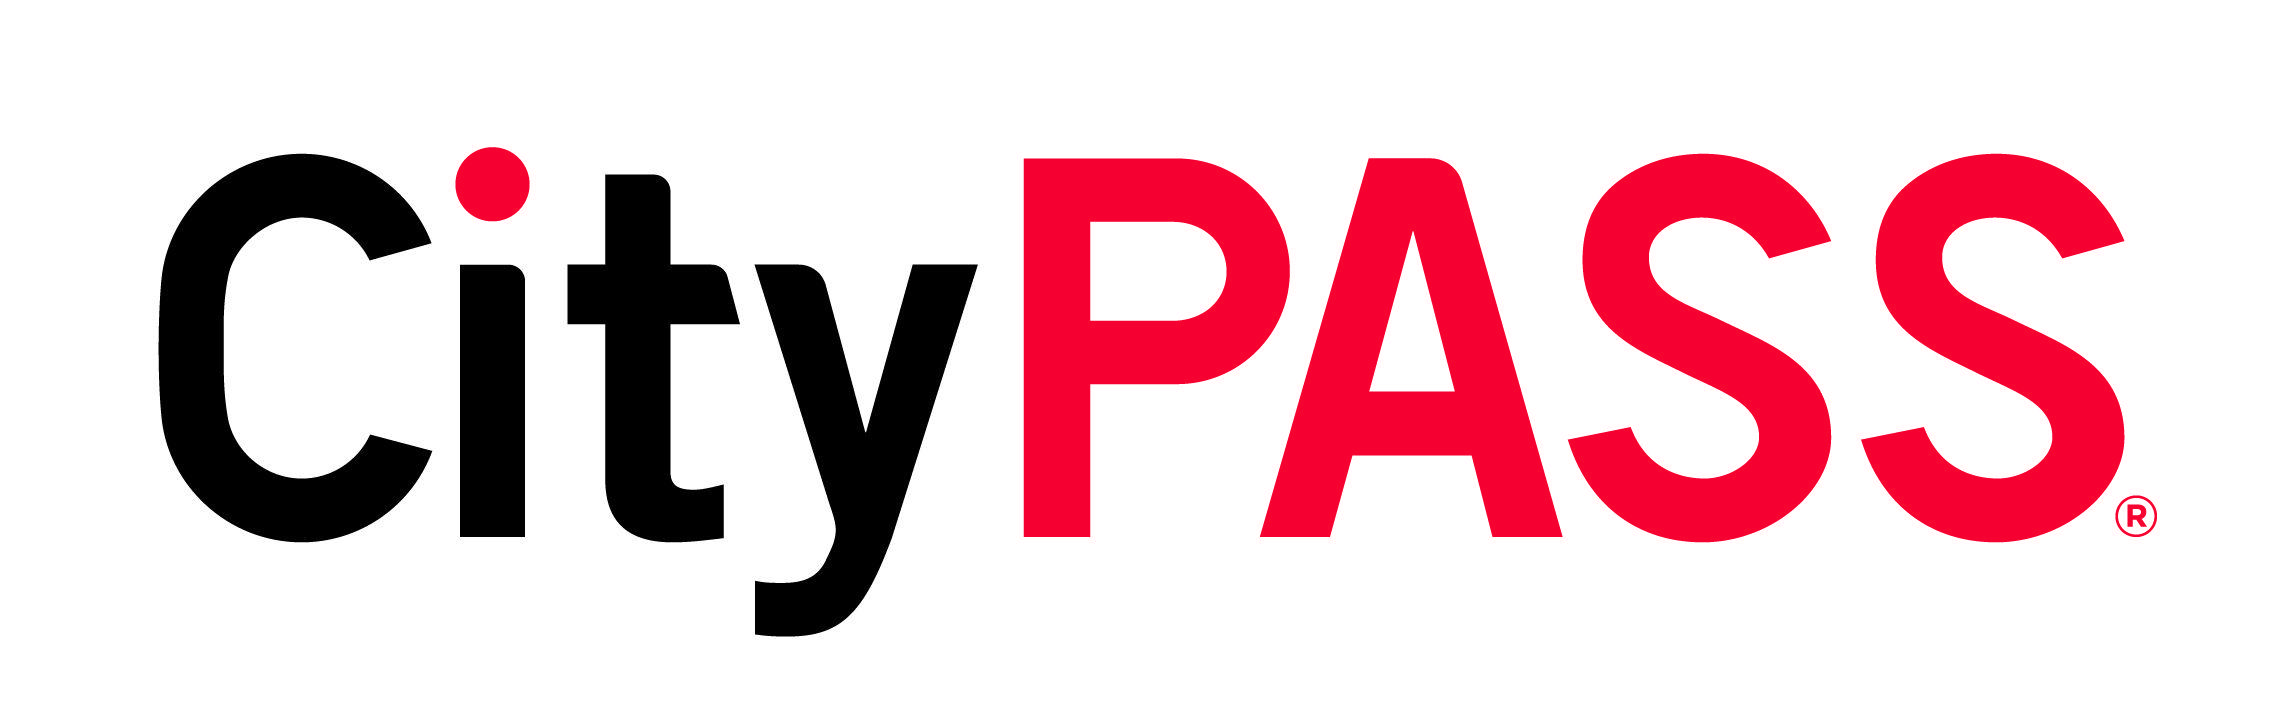 Pass Logo - Asset Library Logos - General CityPASS | CityPASS®